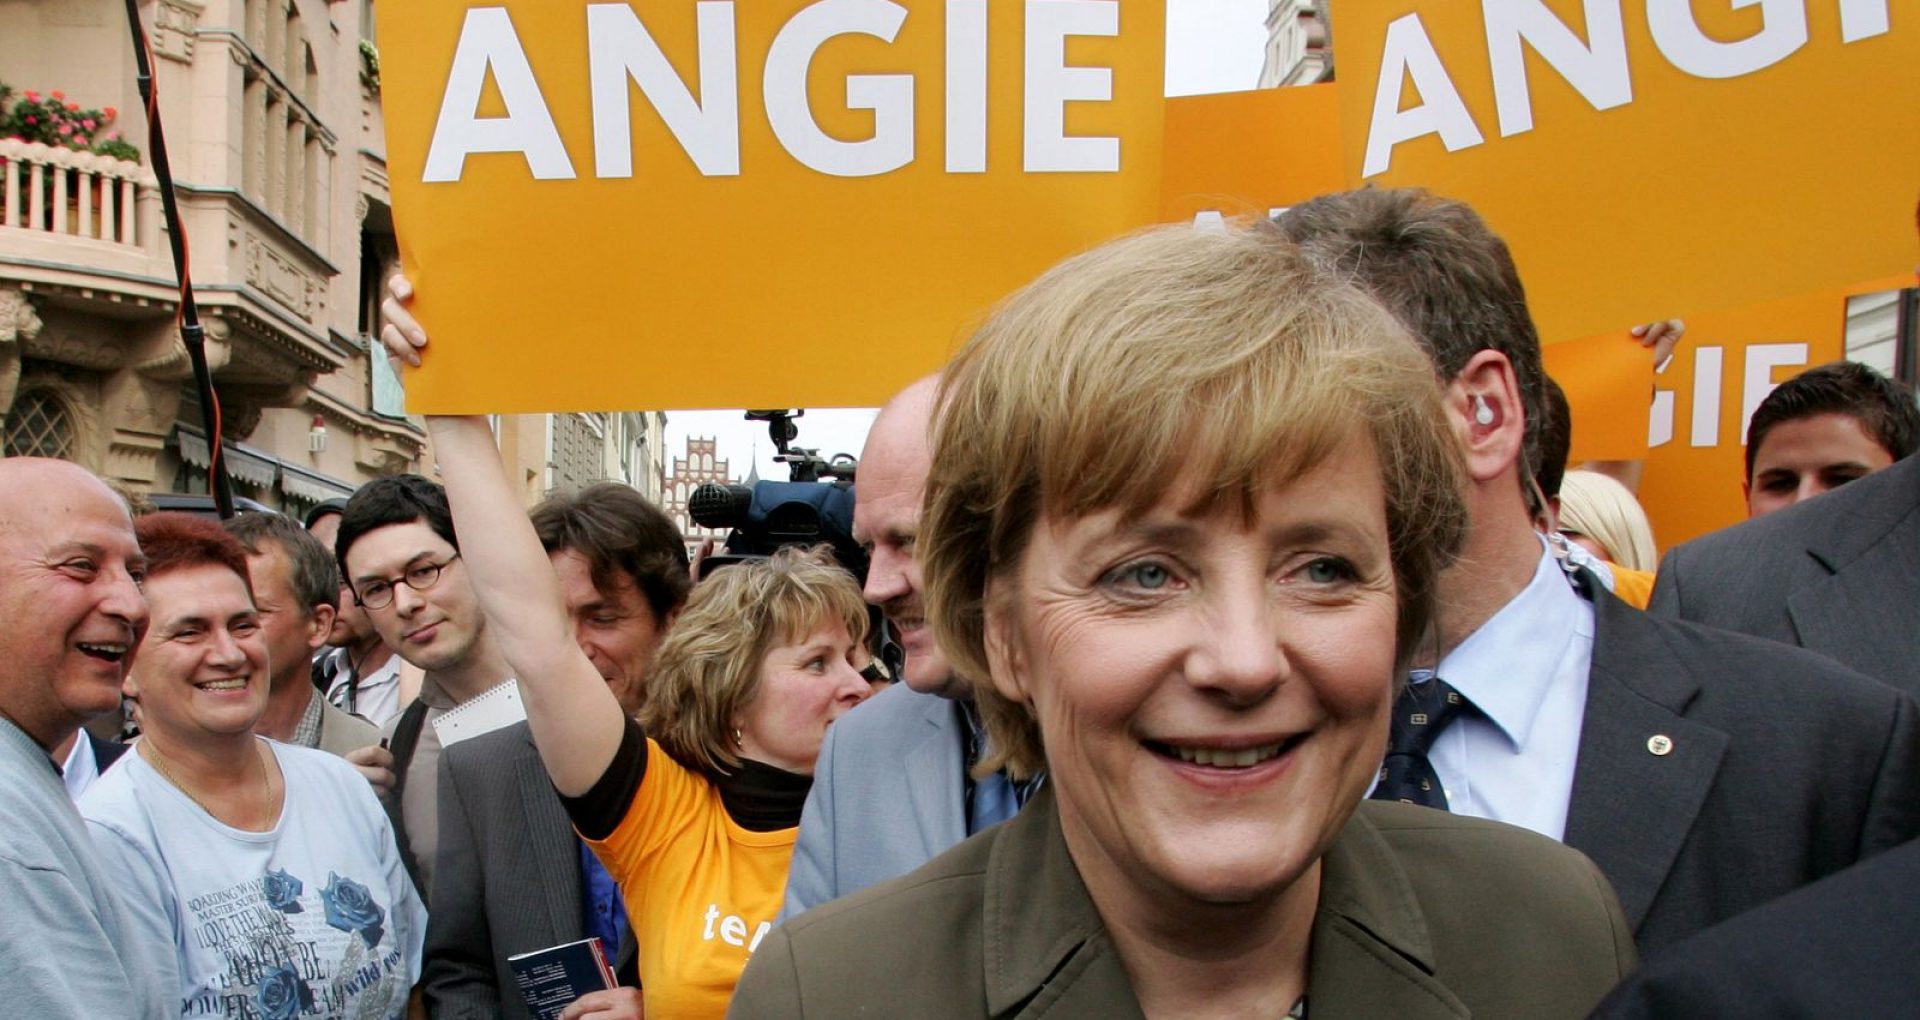 Analiză Sky News: Angela Merkel, care a condus Germania timp de 16 ani, desemnată cea mai puternică femeie din lume de 13 ori în ultimii 14 ani